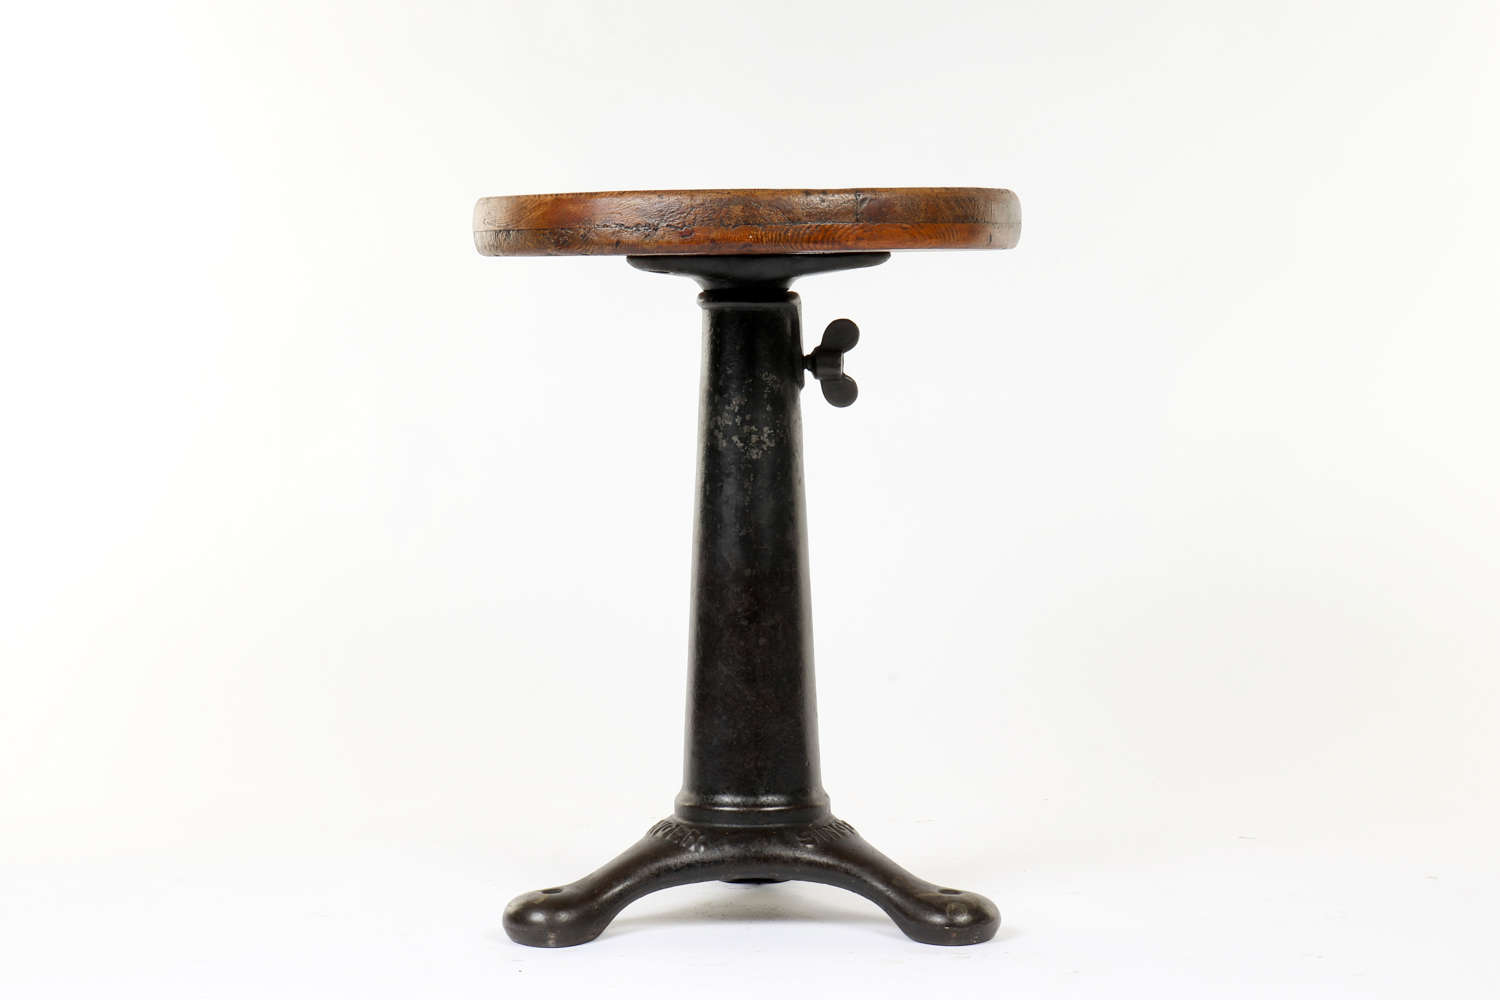 Vintage industrial work stool by Singer